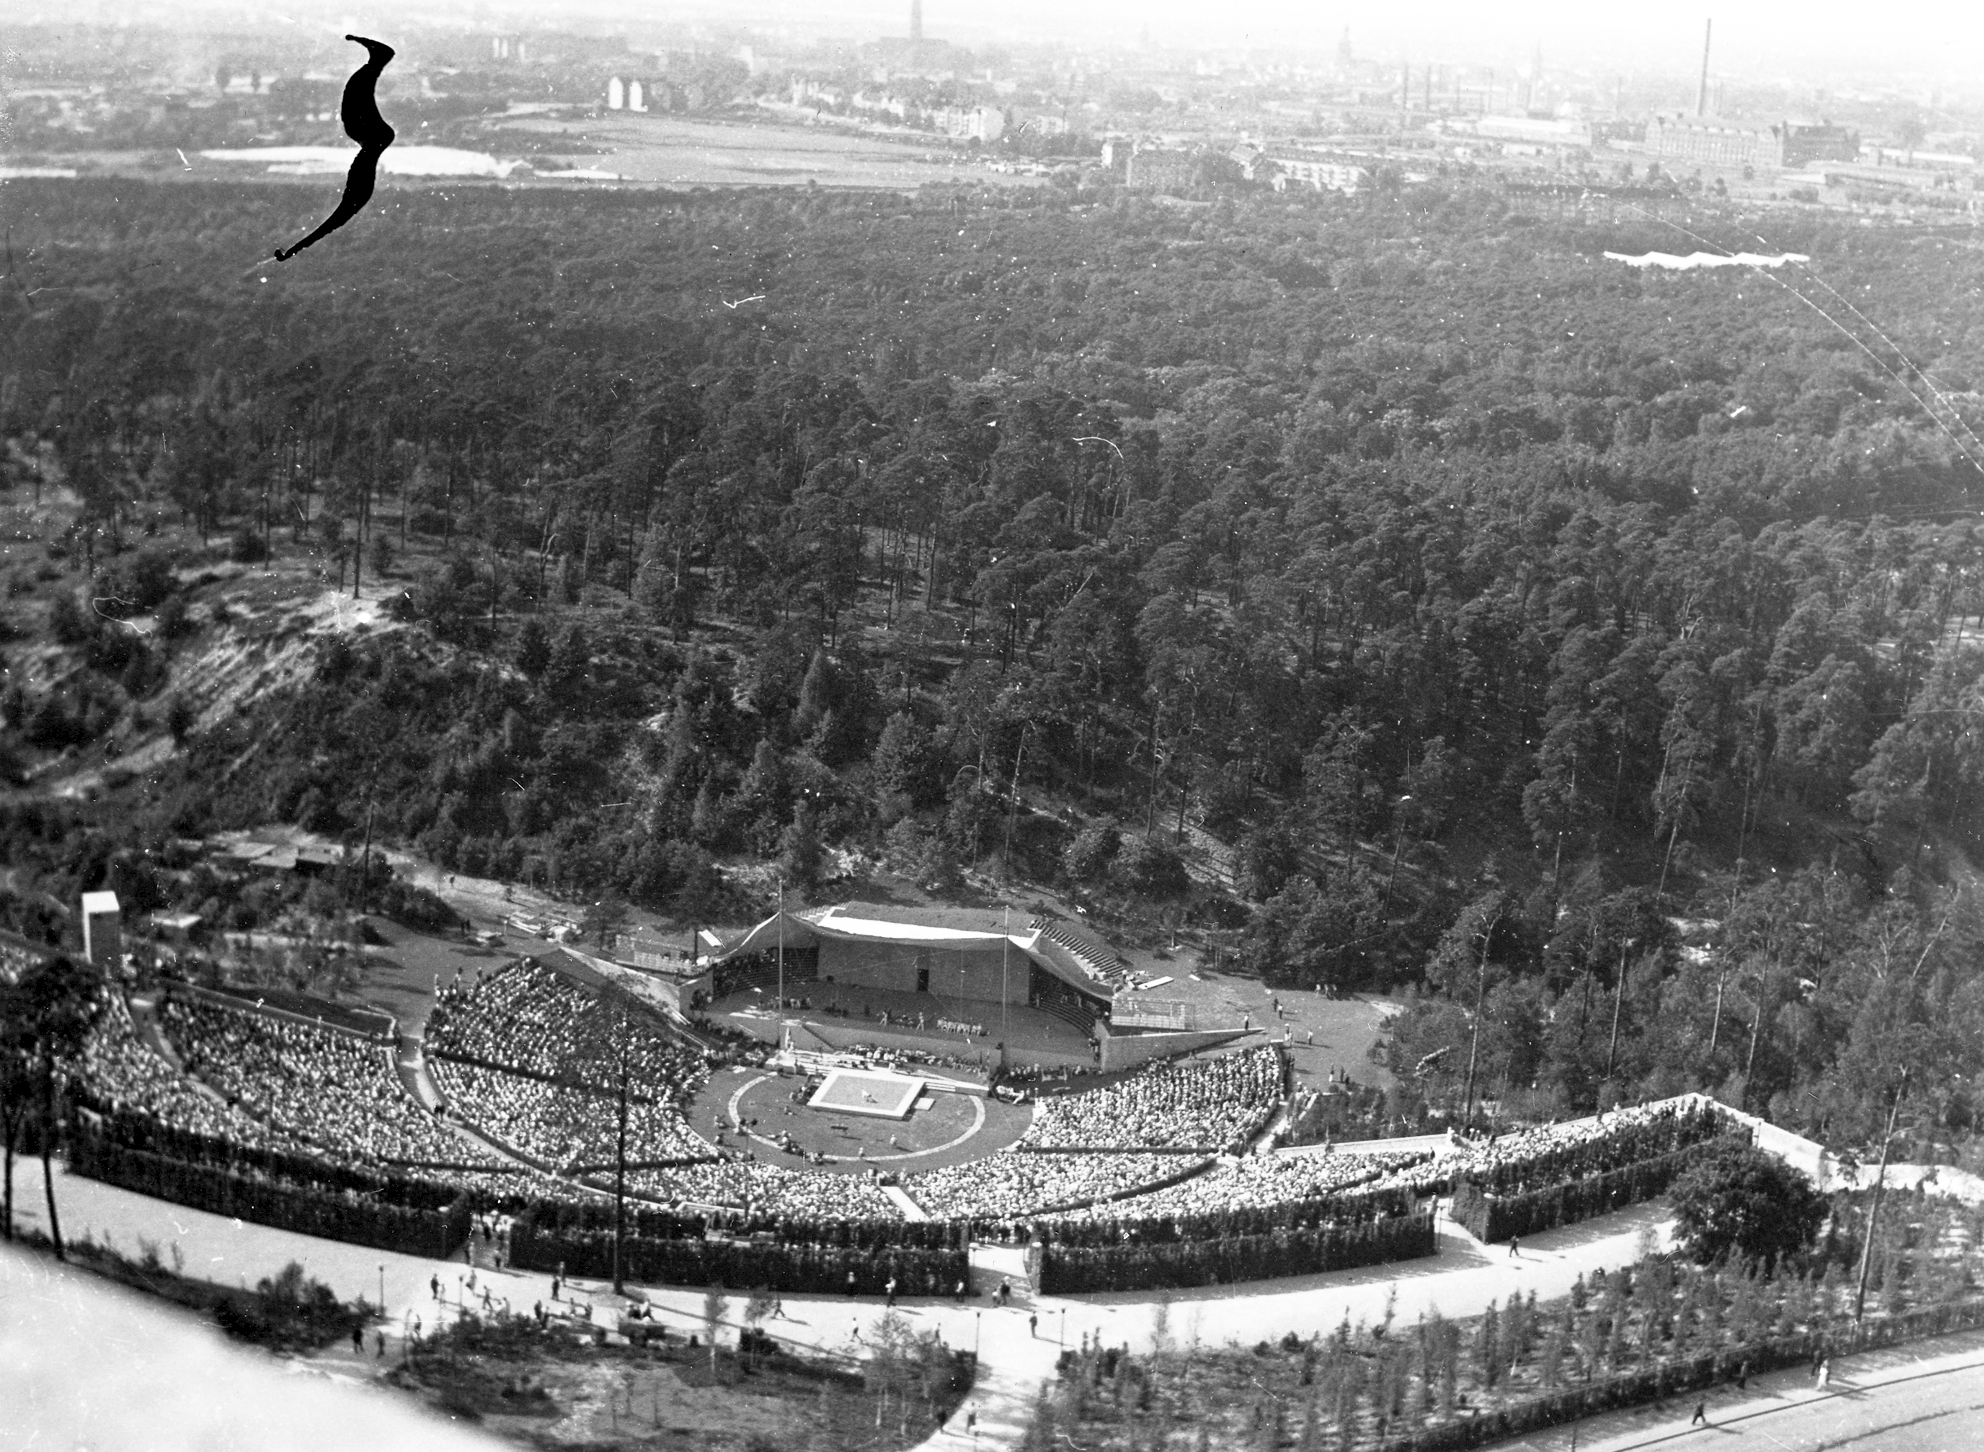 1936年ベルリンオリンピック - Wikipedia